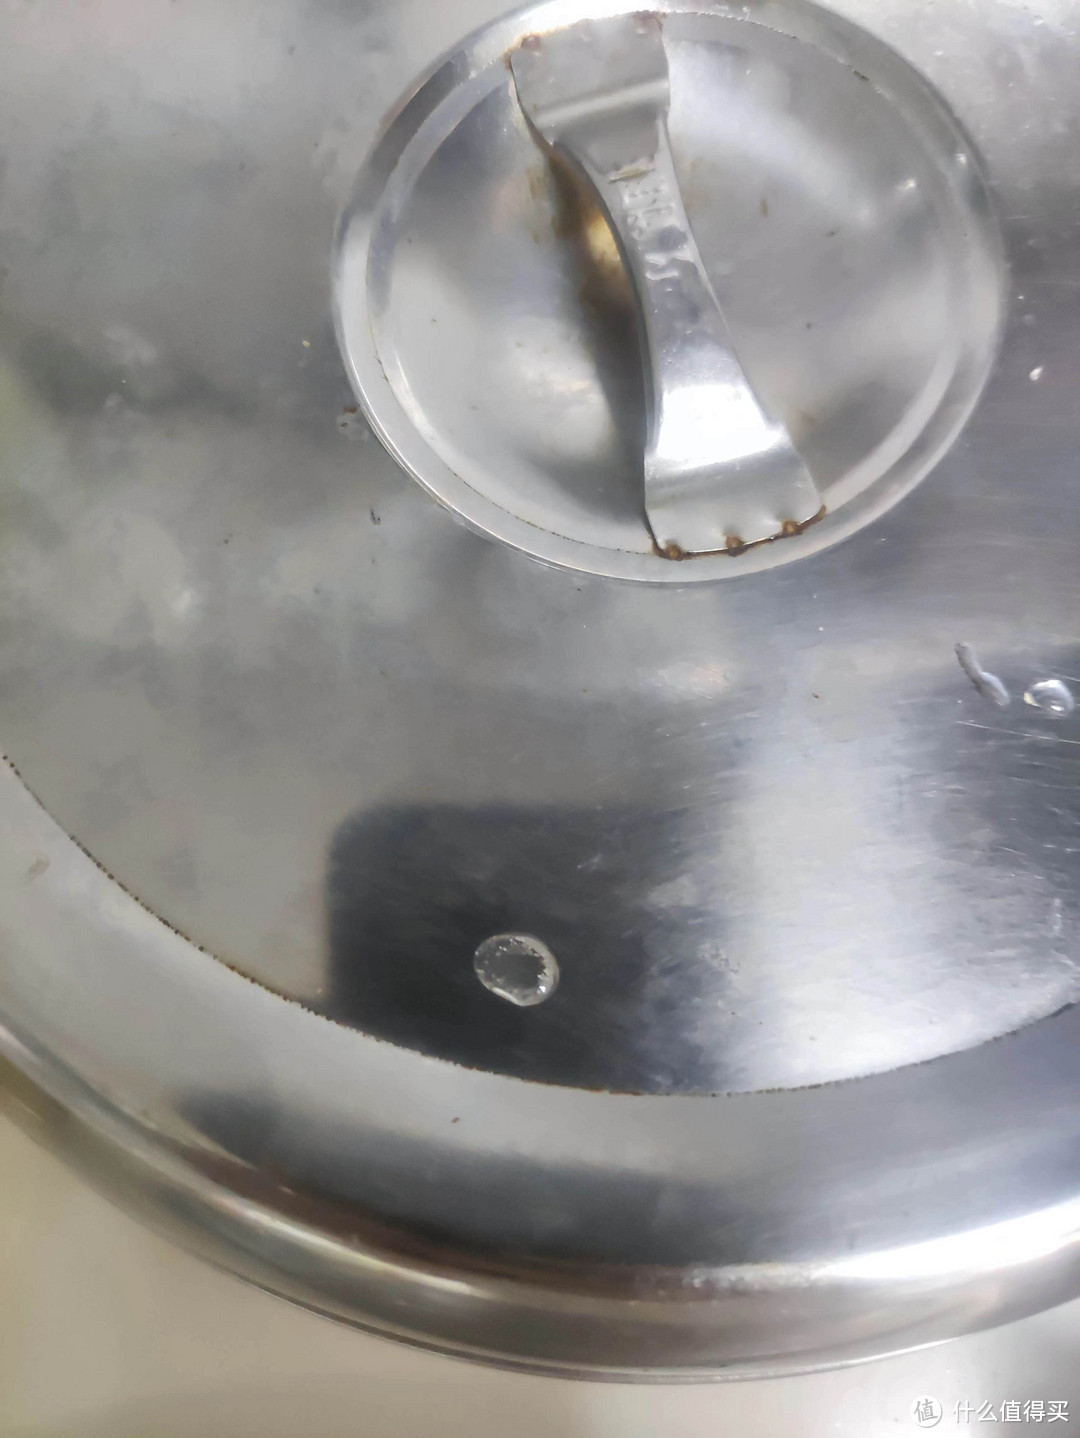 用了不锈钢检测液，还是挺挺颠覆对原有器皿印象的